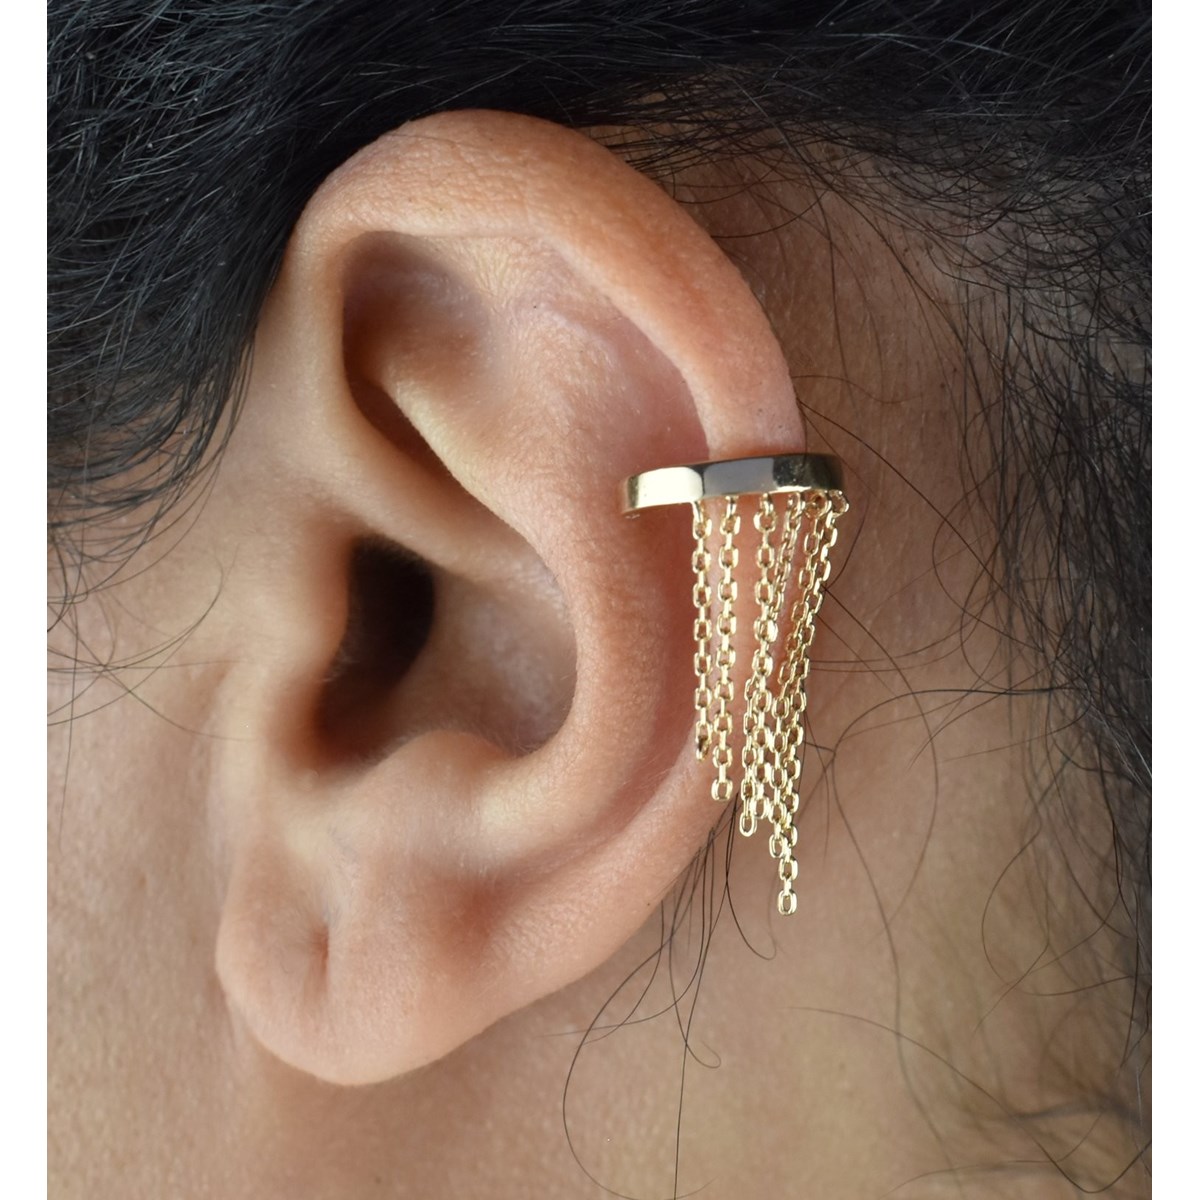 Clip d'oreille earcuff avec chaînettes pendantes Plaqué OR 750 3 microns - vue 3